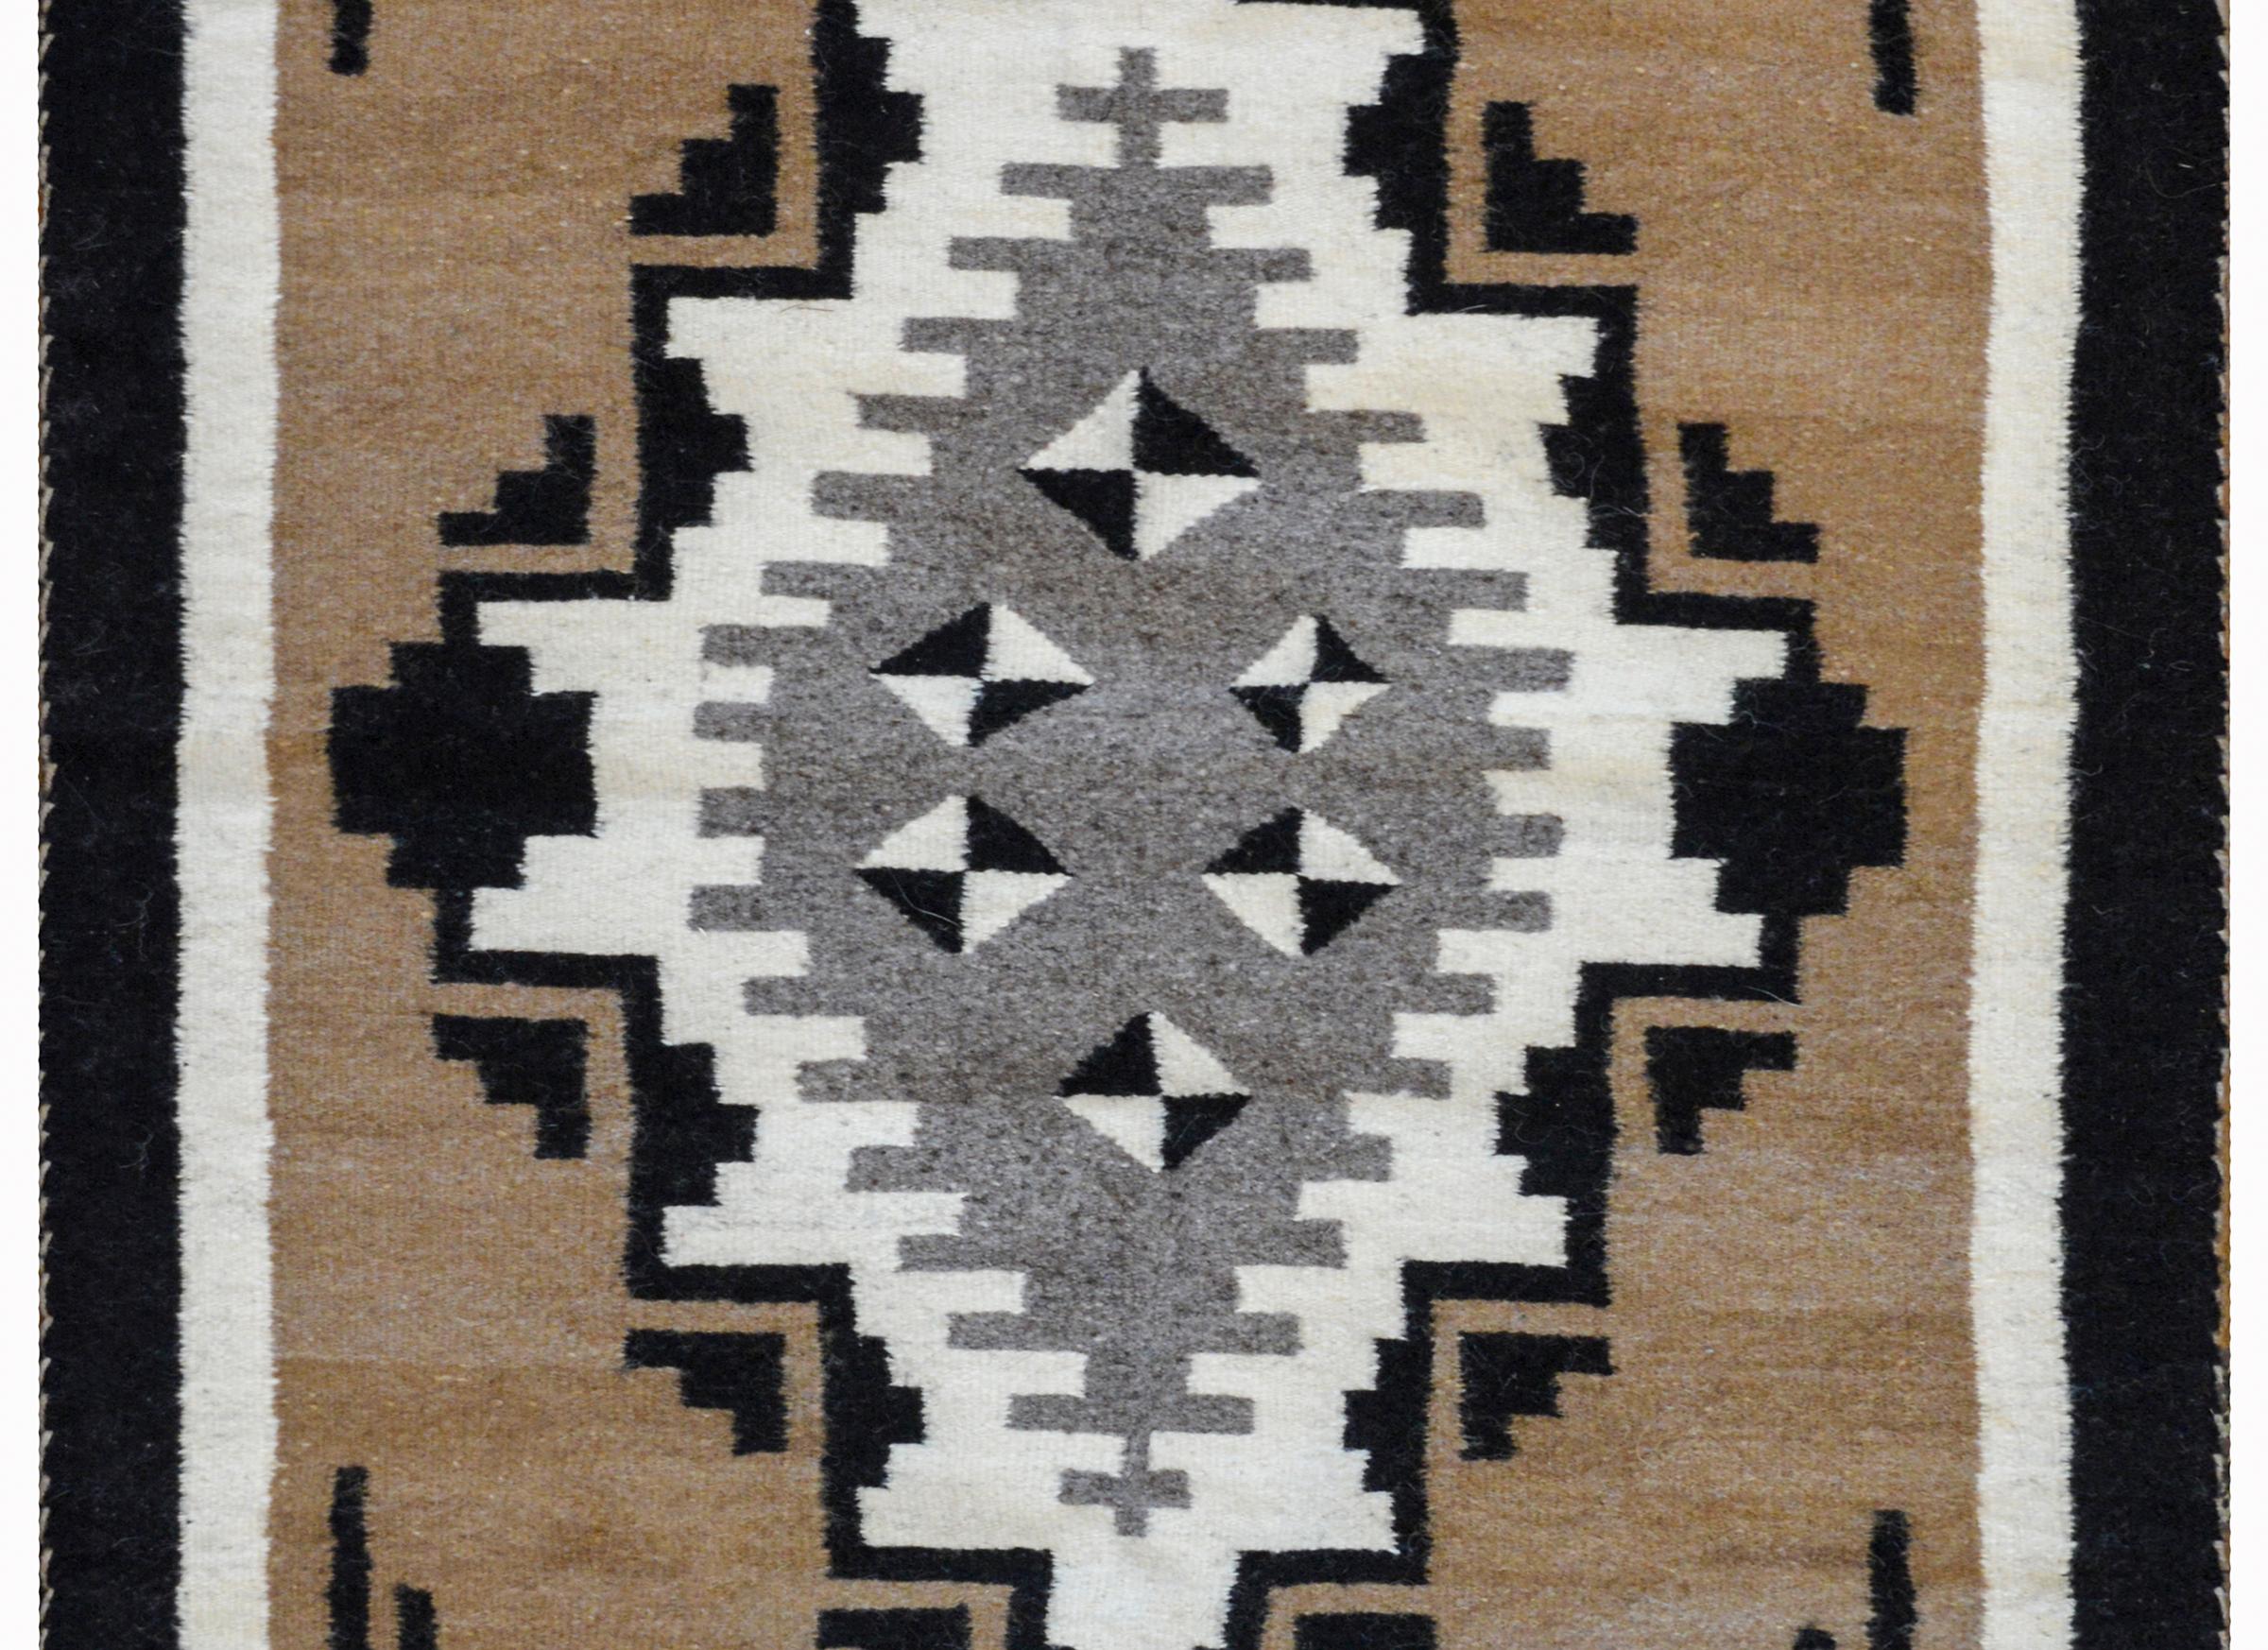 Ein wunderschöner Navajo-Teppich aus der Mitte des 20. Jahrhunderts mit einer großen grauen Raute in der Mitte und mehreren kleineren schwarzen und weißen Rauten, umgeben von geometrisch gemusterten weißen und schwarzen Rauten auf kamelfarbenem